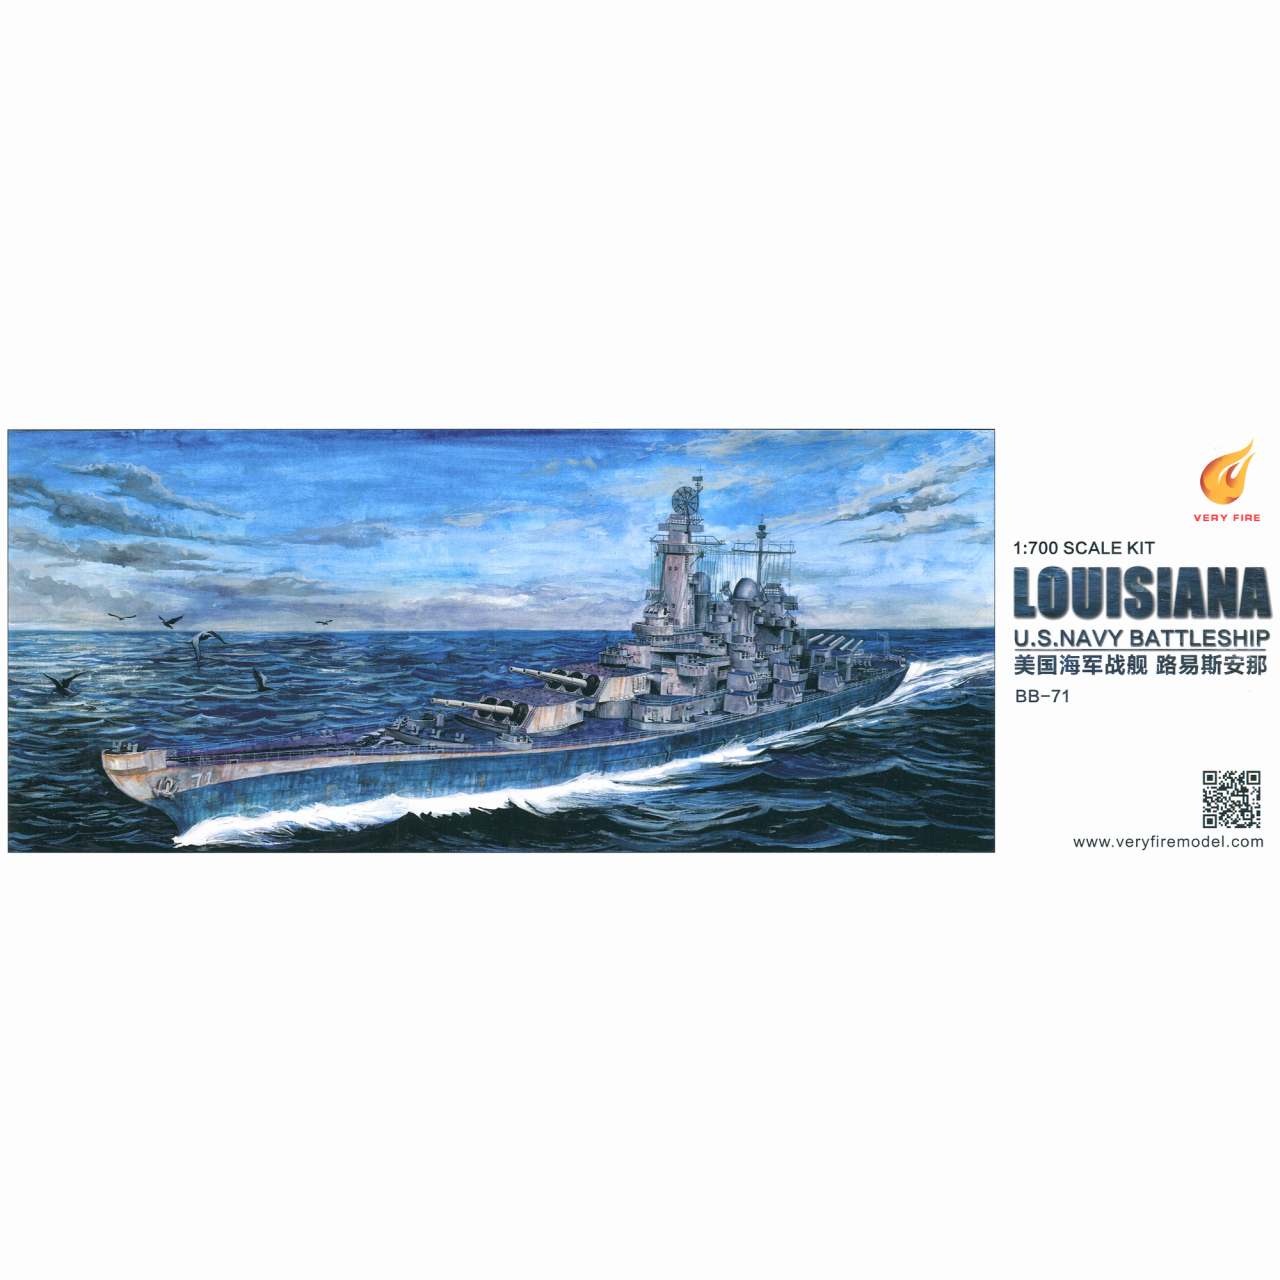 【新製品】VF700902 米国海軍 モンタナ級戦艦 BB-71 ルイジアナ Louisiana